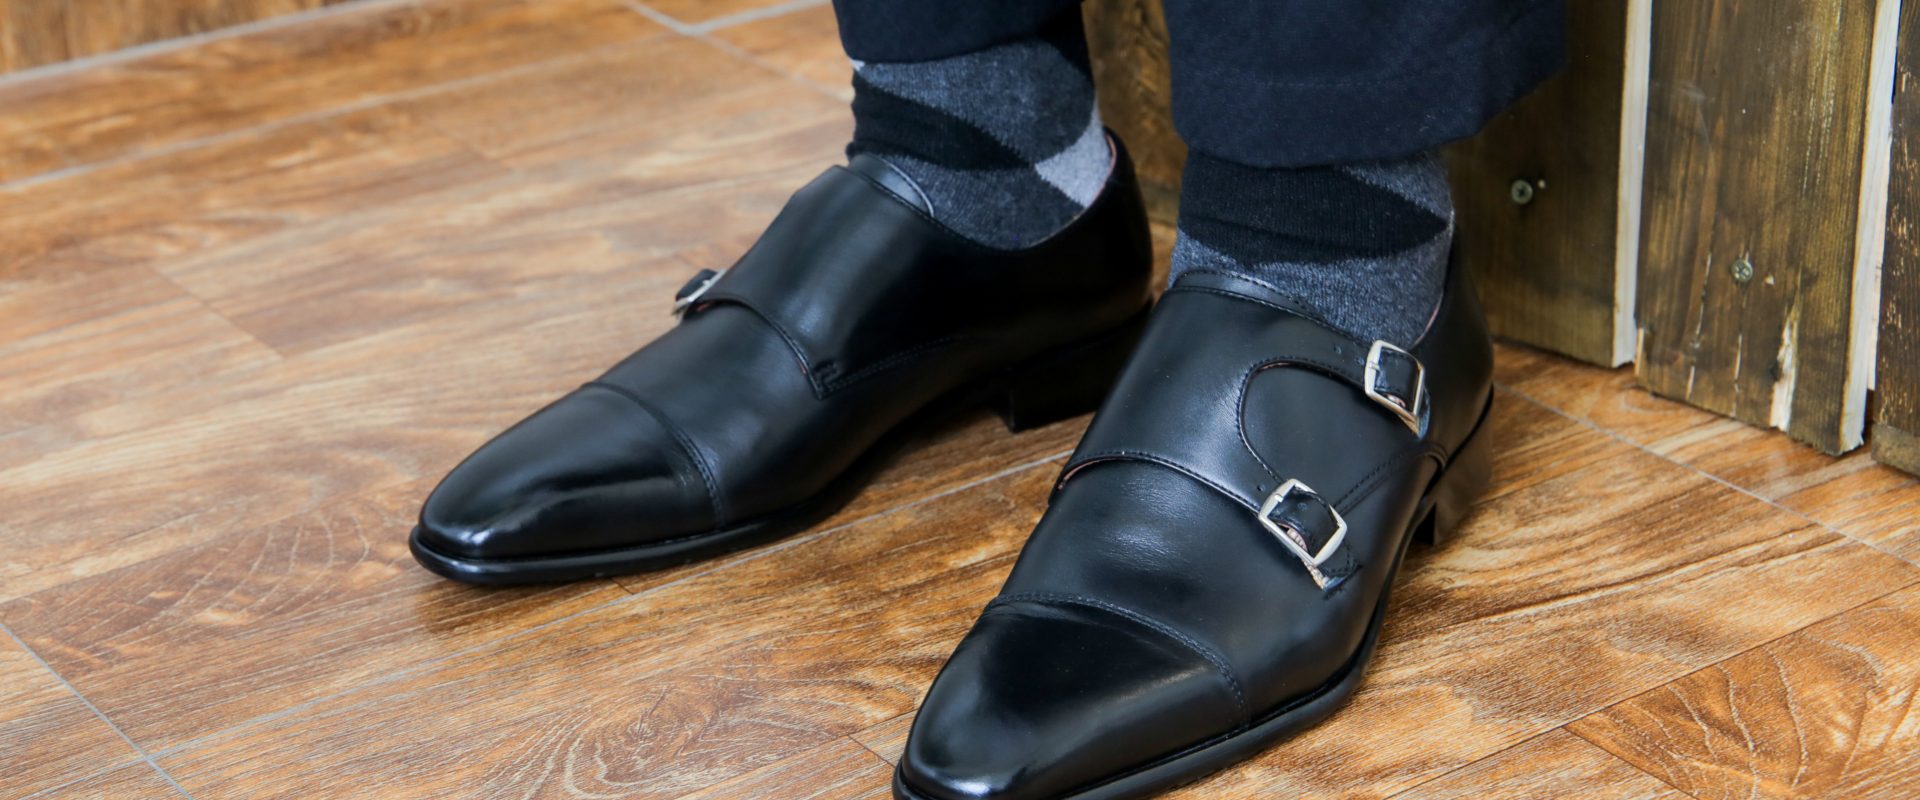 Giày Monkstrap là gì? Mẫu giày thanh lịch trẻ trung - Kiến thức đồ da thật